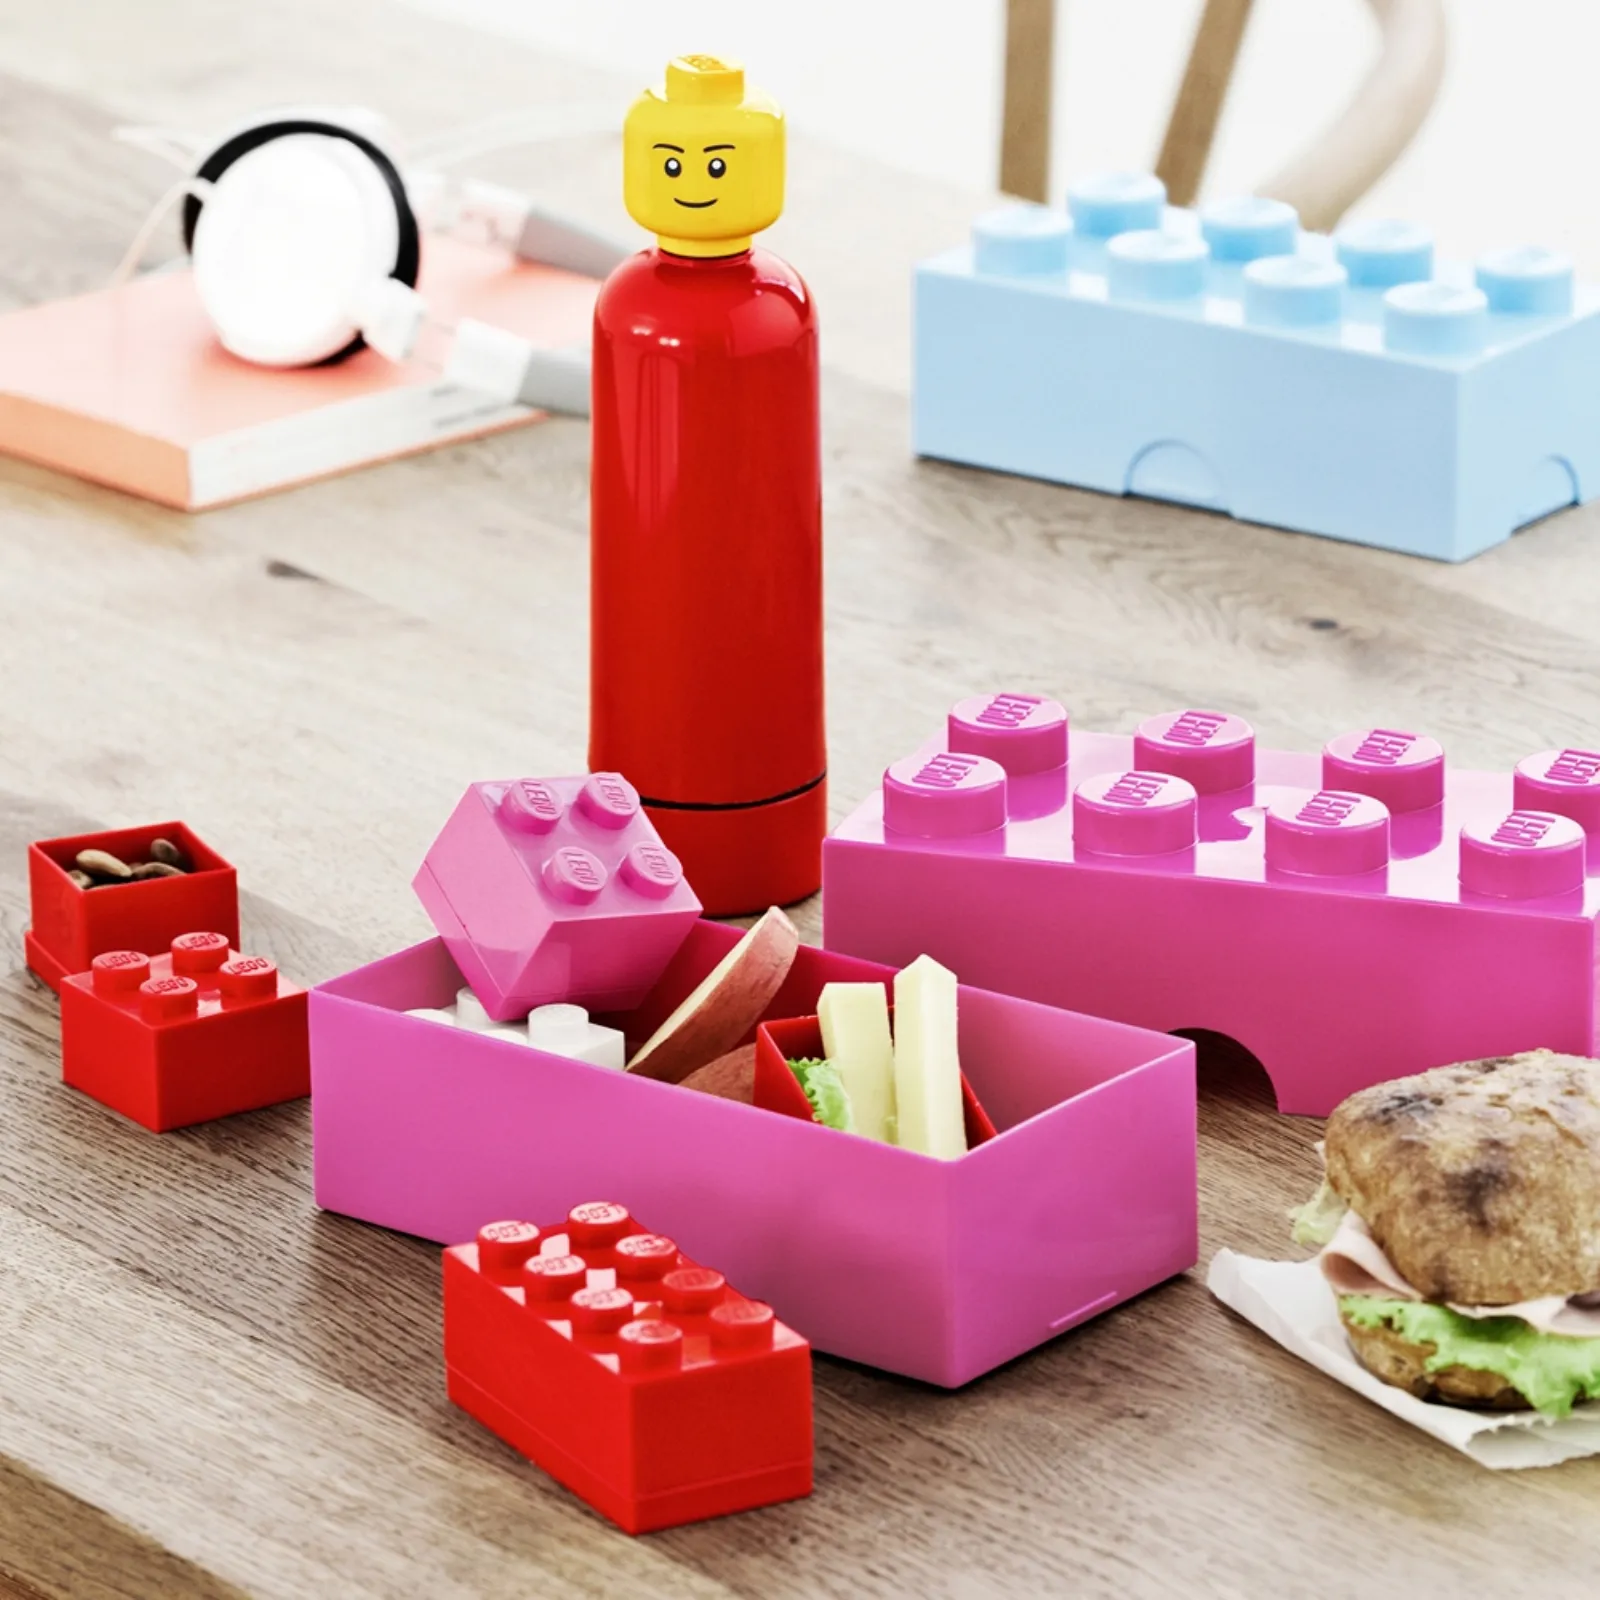 Container Lego Storage Brick 8 Pink